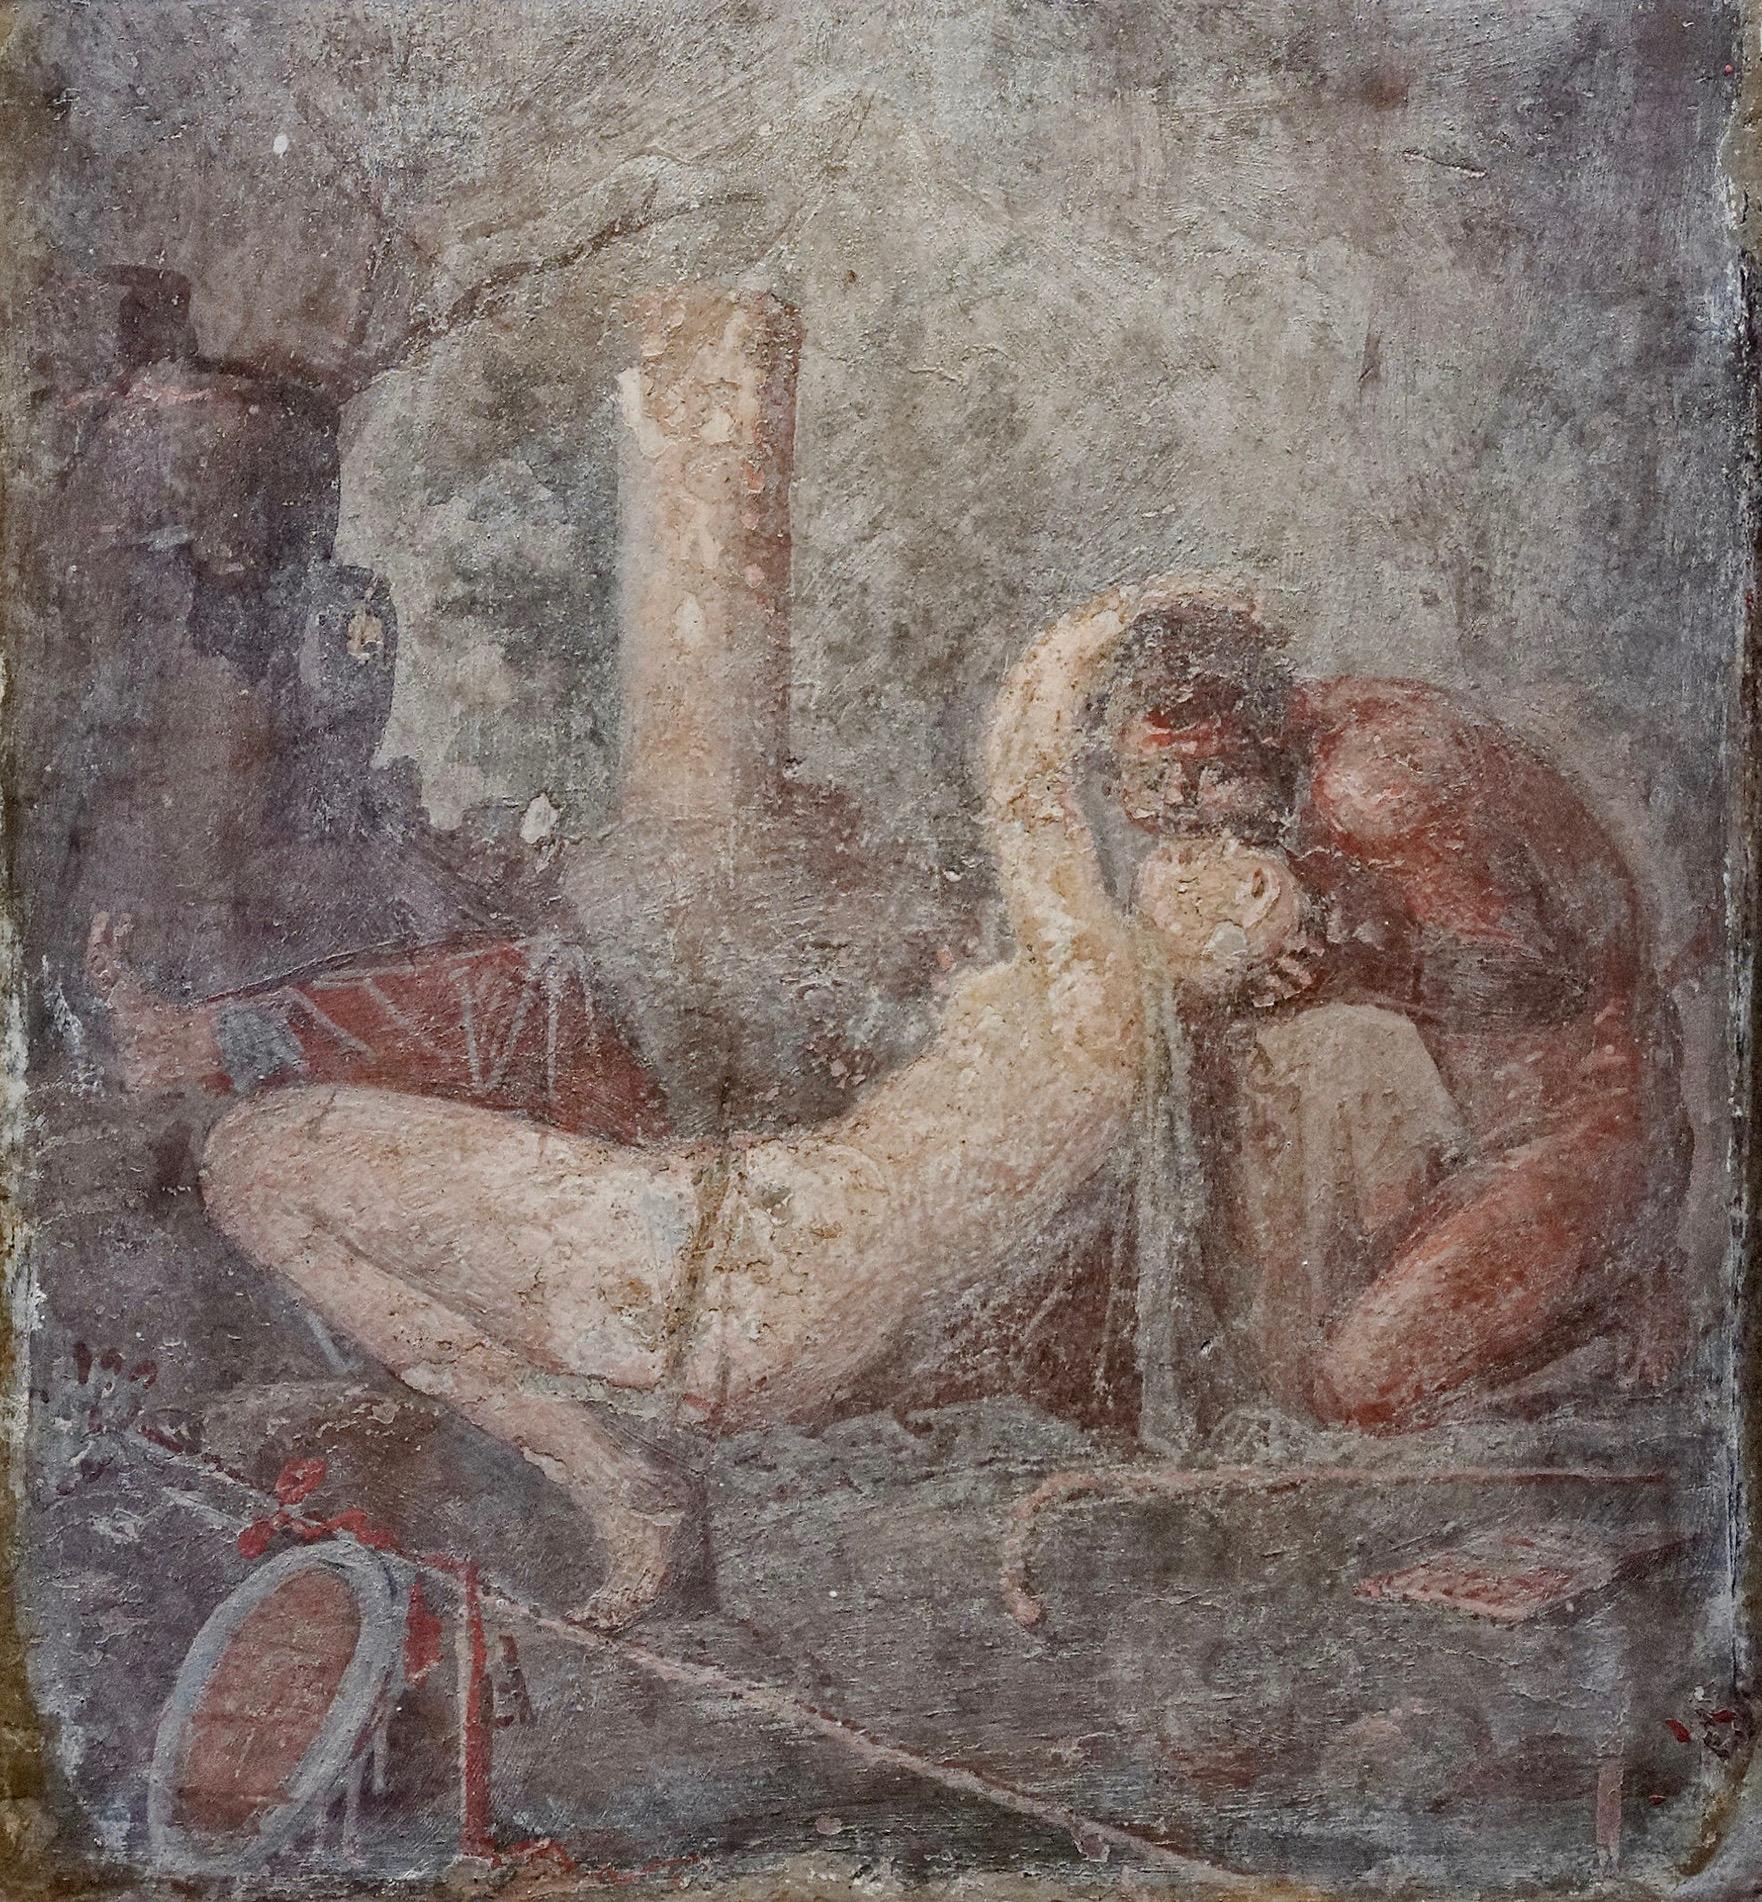 Σάτυρος και Μαινάδα, τοιχογραφία από το Ηerculaneum, Museo Archeologico Nazionale di Napoli.